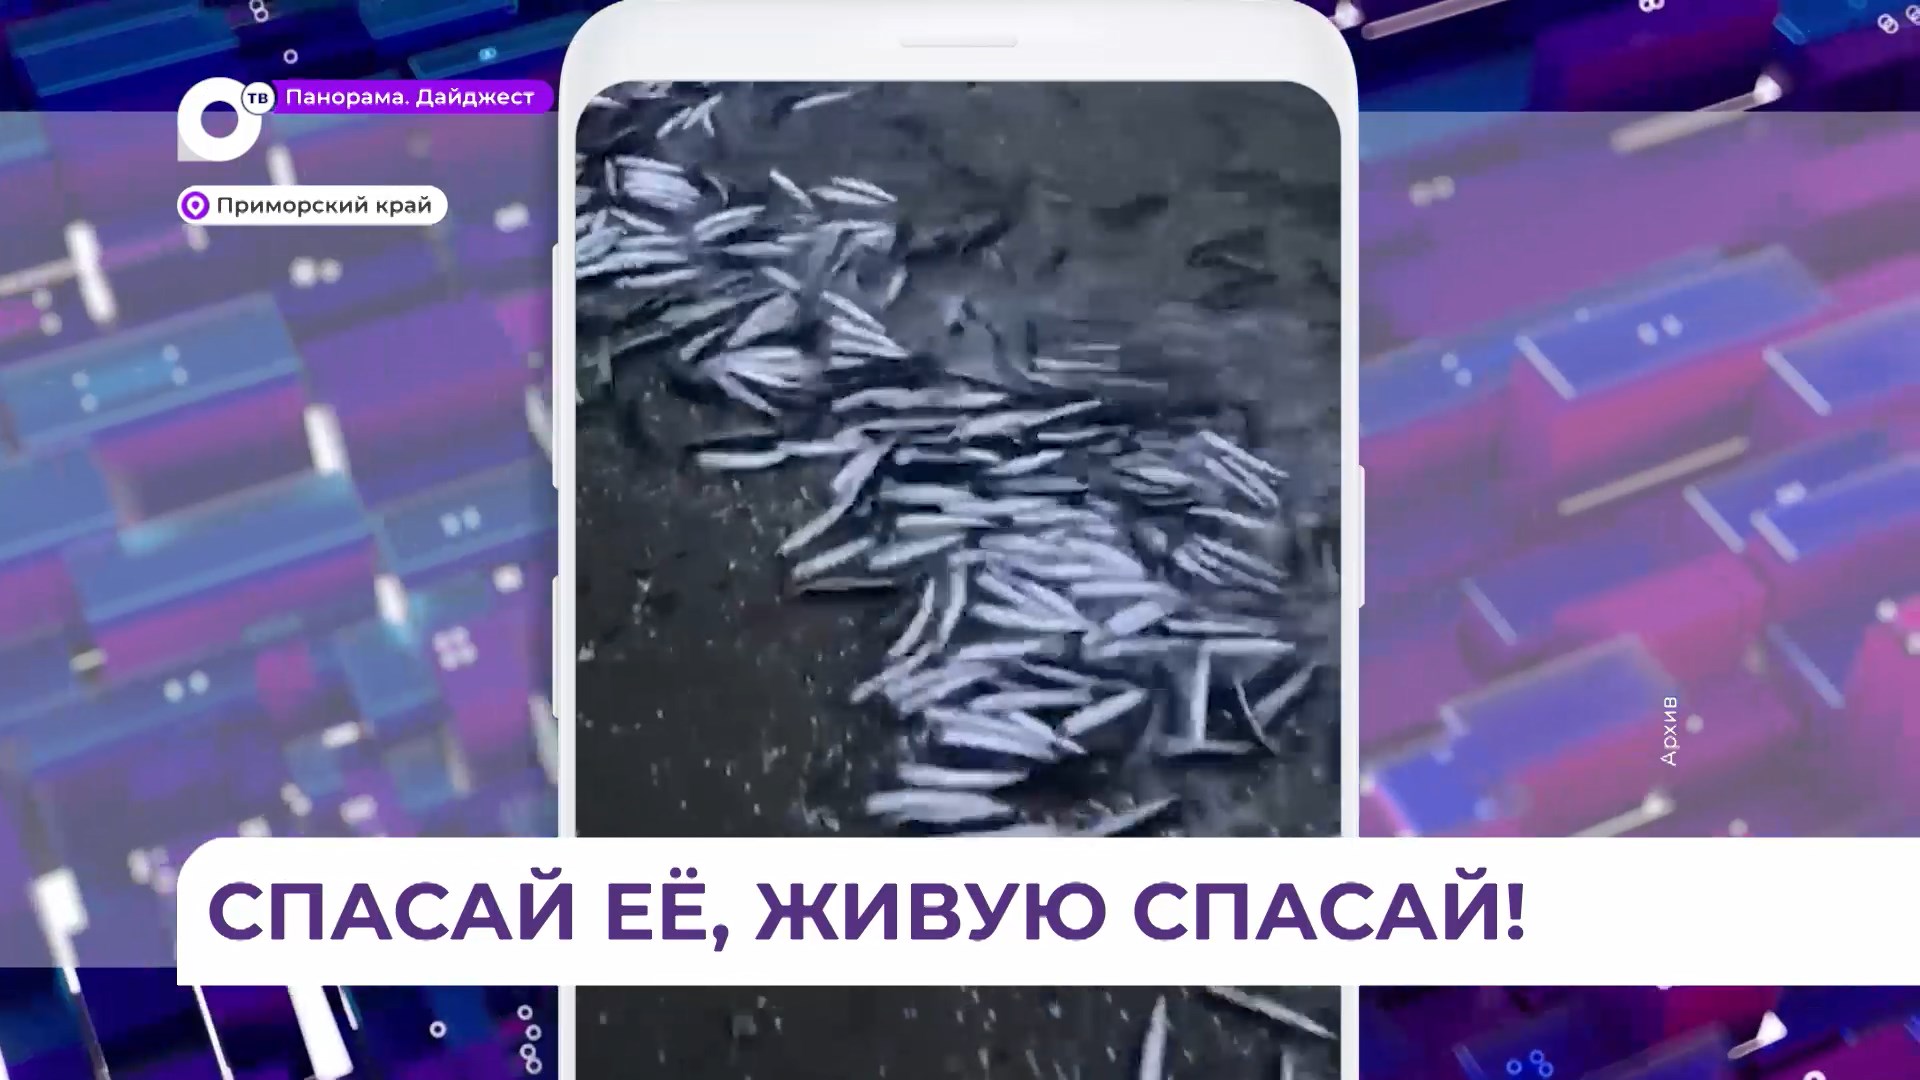 Жители Владивостока устроили операцию по спасению анчоусов на набережной Эгершельда